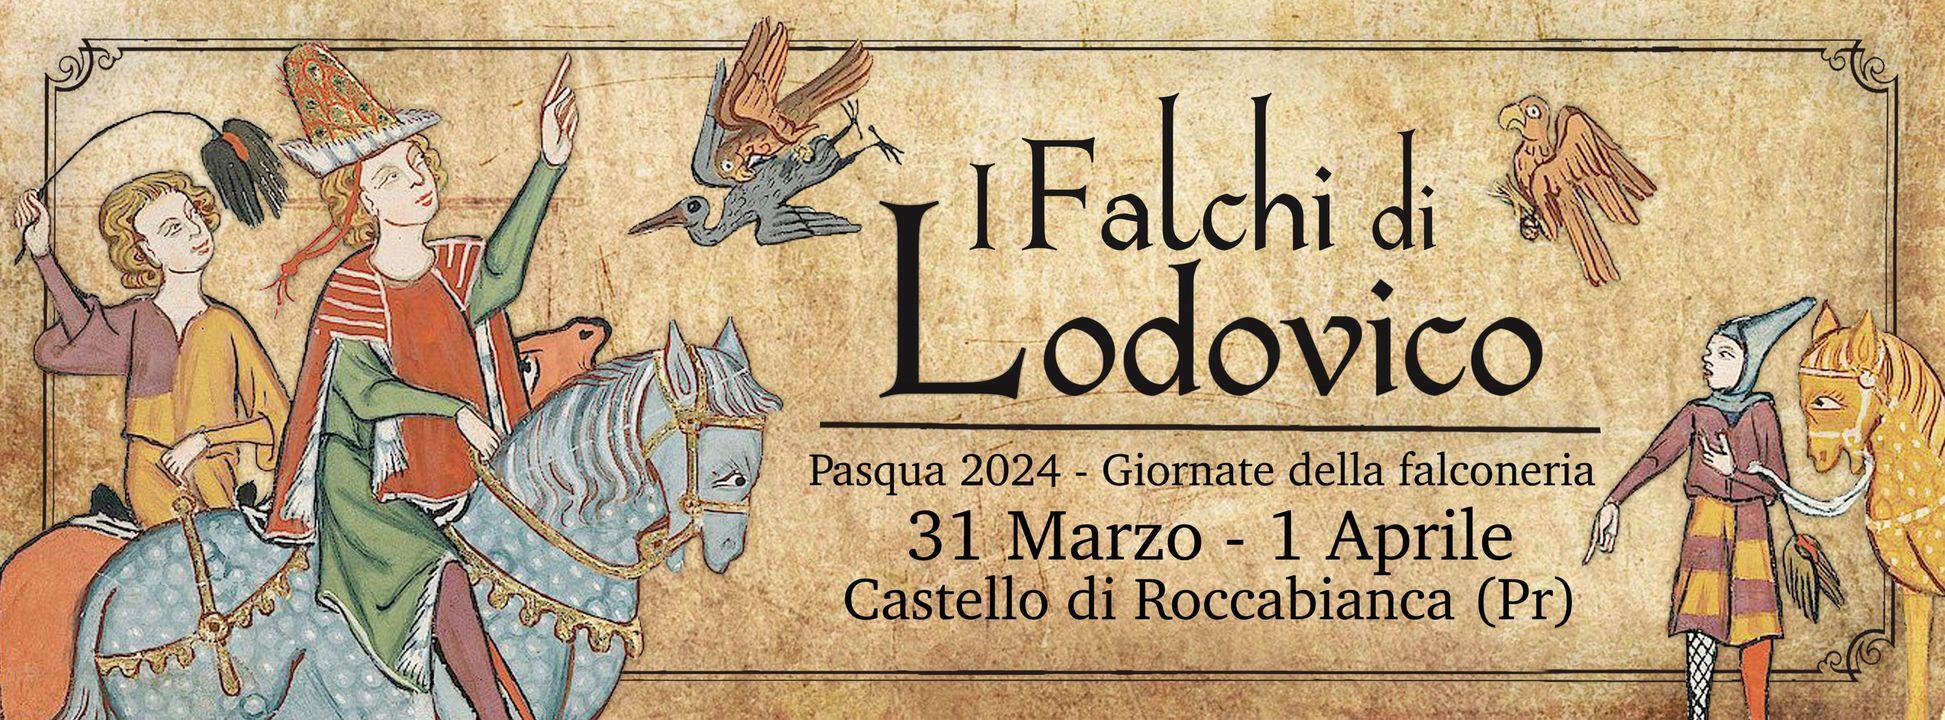 I Falchi di Lodovico - Giornate della Falconeria al castello di Roccabianca